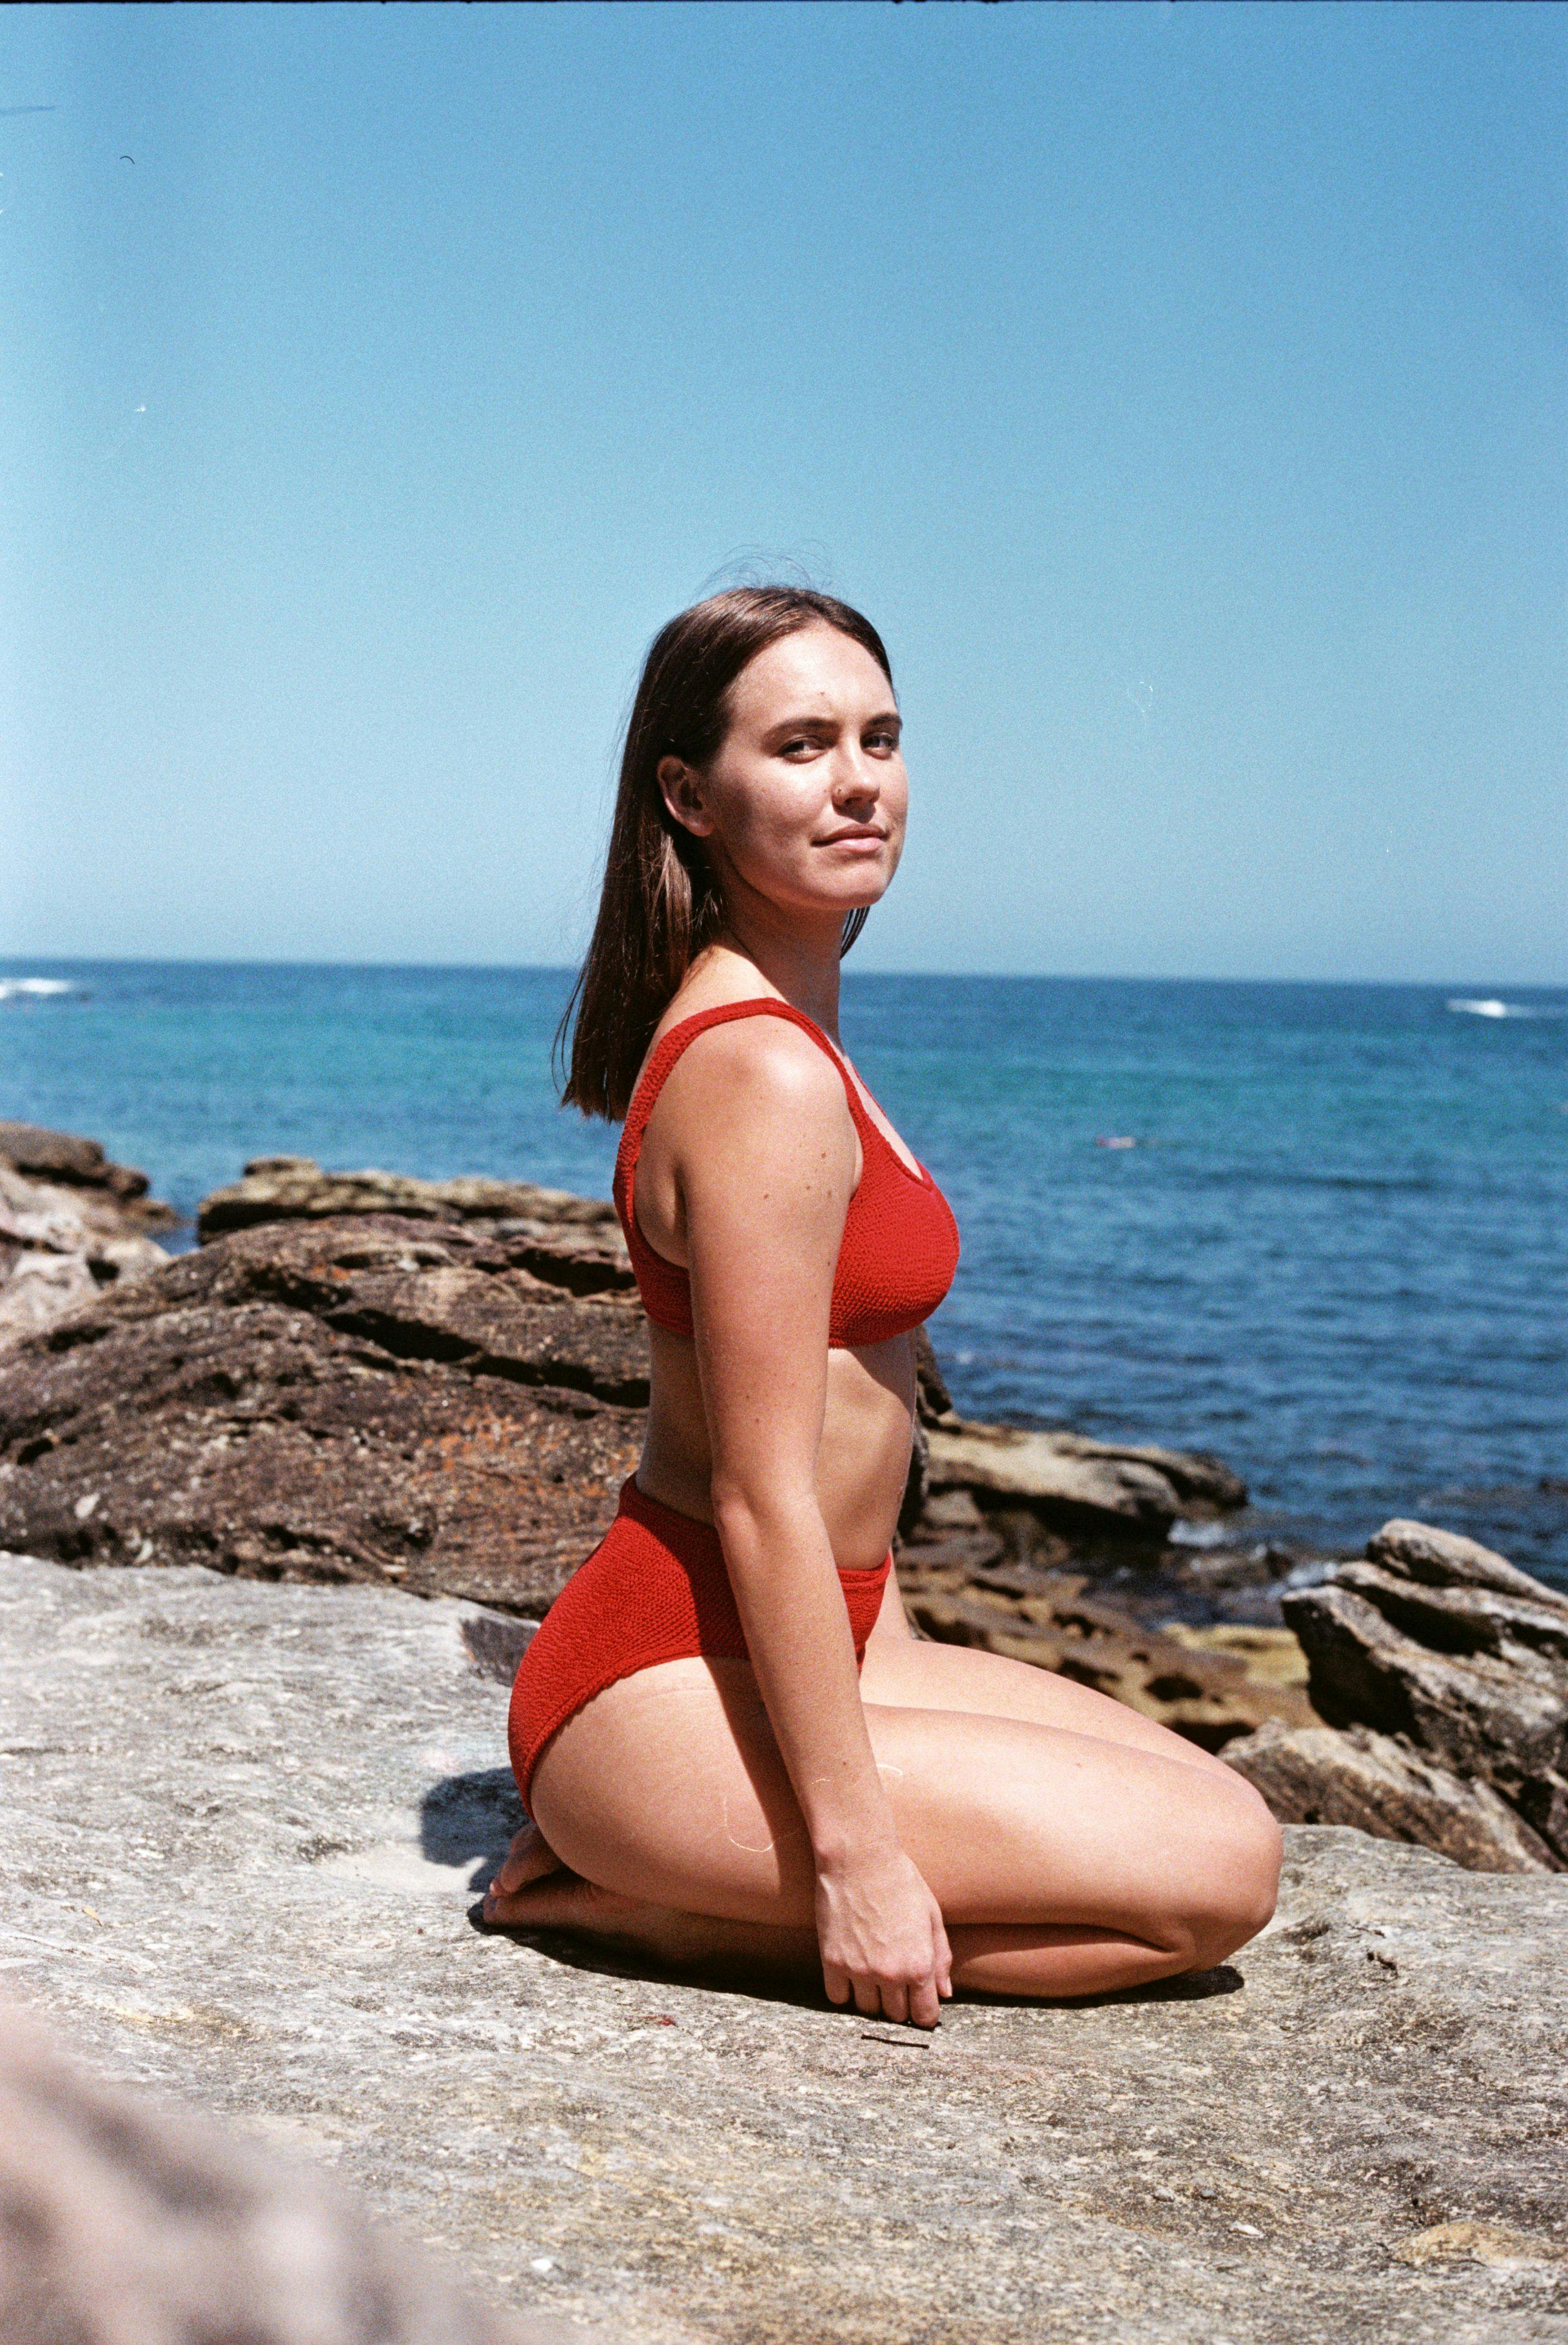 Marlee kneeling on rocks by the ocean in red bikini